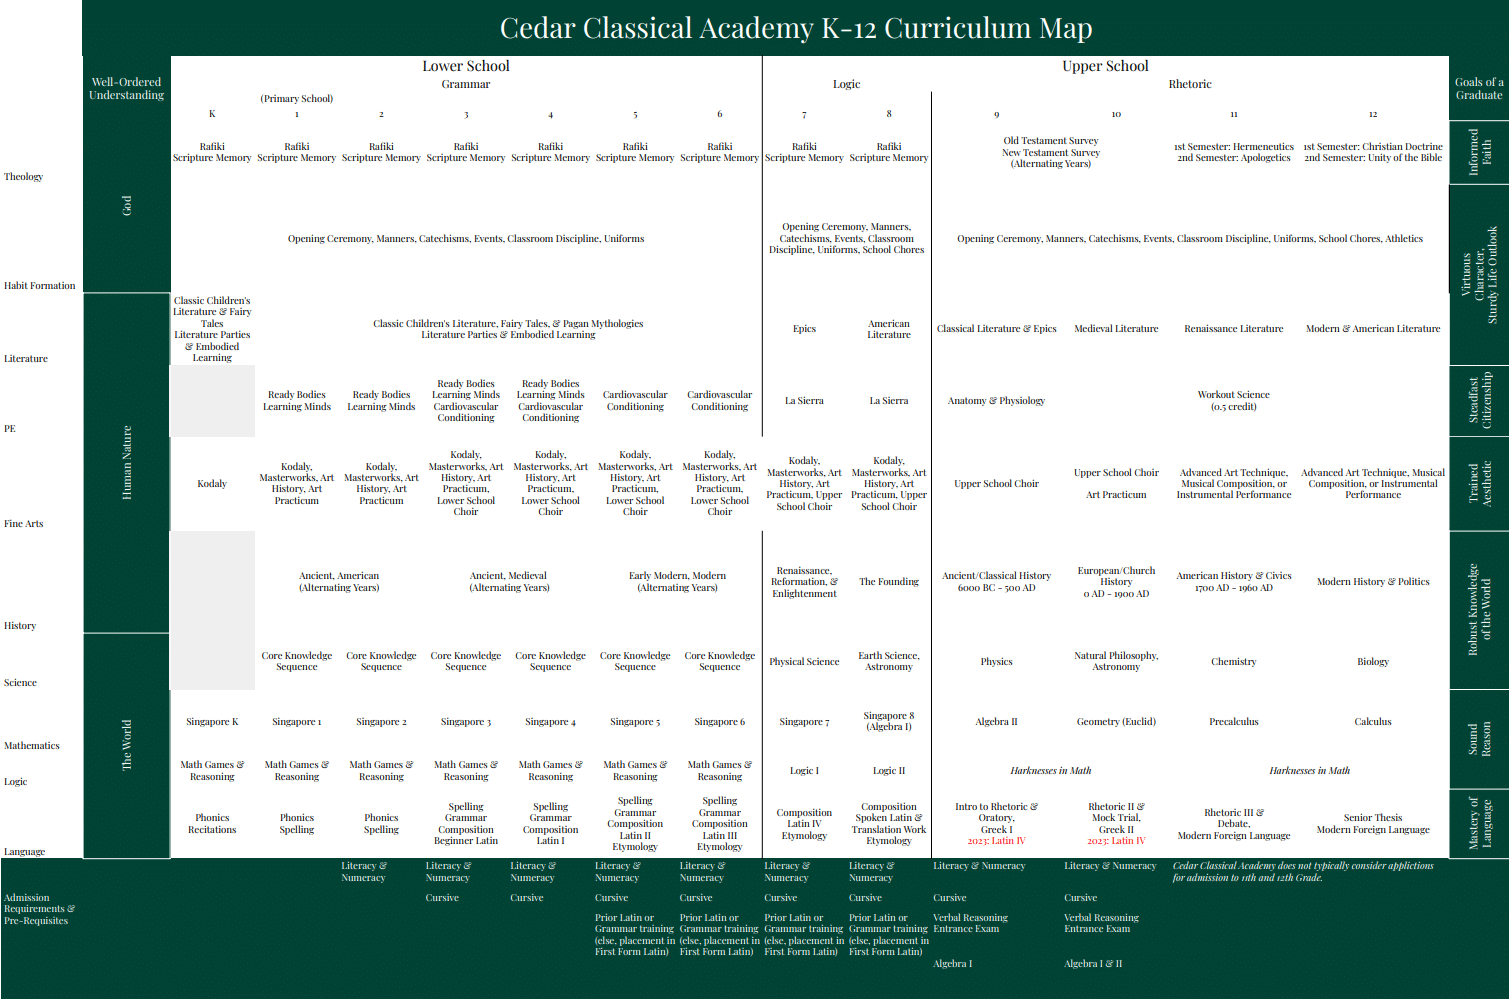 CCA Curriculum Map